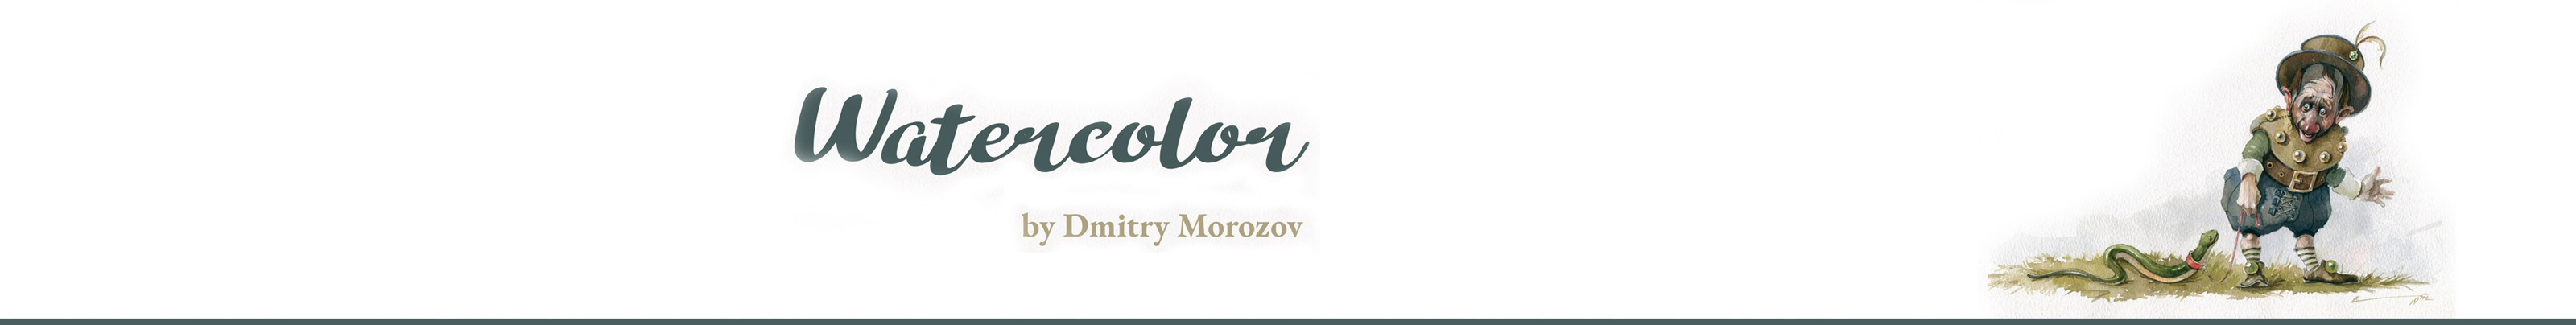 Banner de perfil de Dmitry Morozov